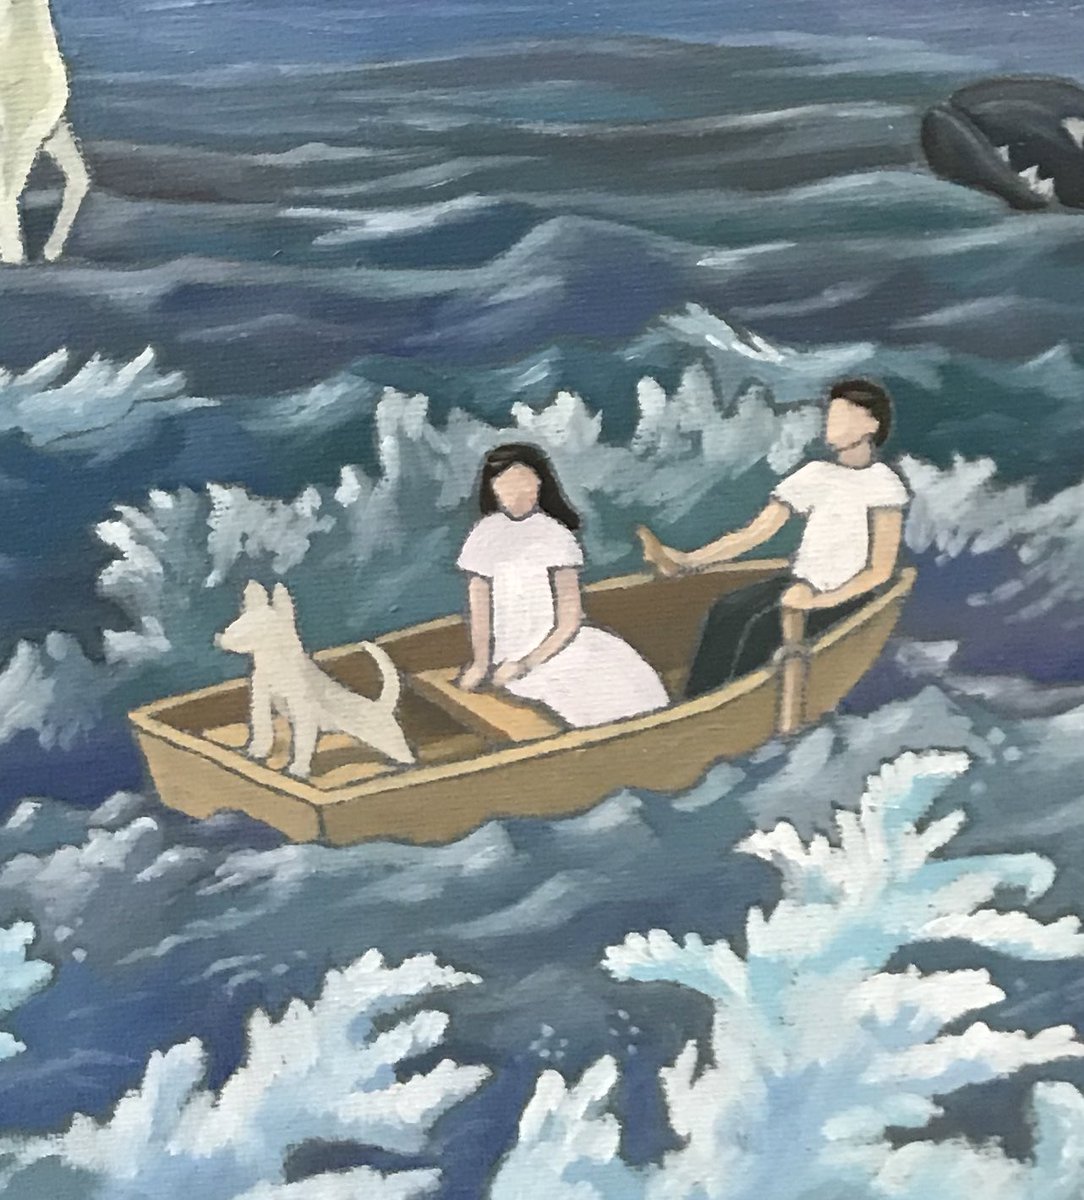 「#メンタルスケッチ「俺のお気に入りの舟」円形キャンバス、油彩、2022年制作個展」|reo sato（宵待通信)のイラスト